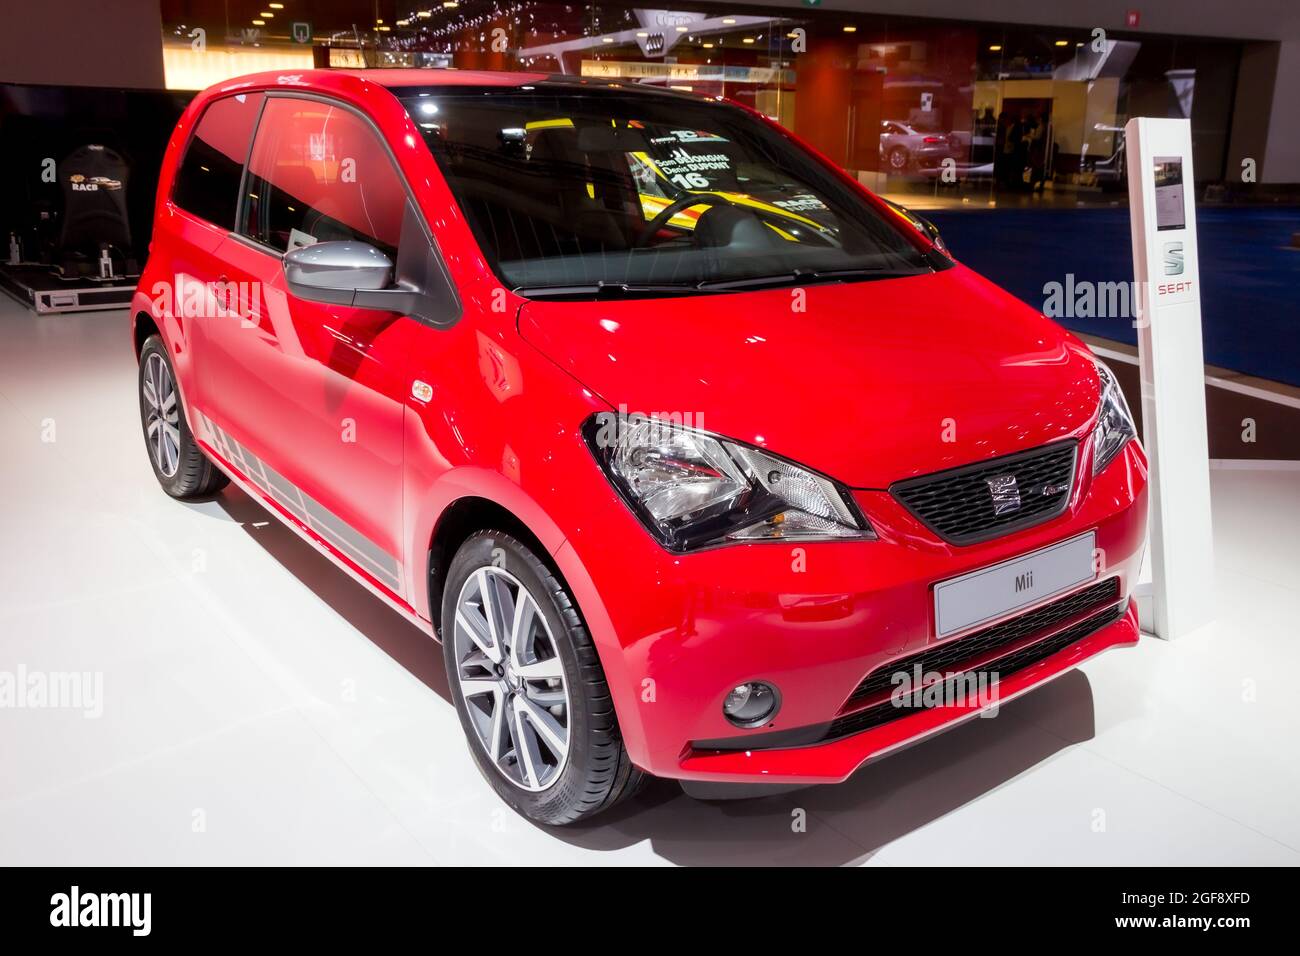 La voiture Seat MII a été présentée au salon de l'automobile Autosalon de l'Expo de Bruxelles. Belgique - 12 janvier 2016 Banque D'Images